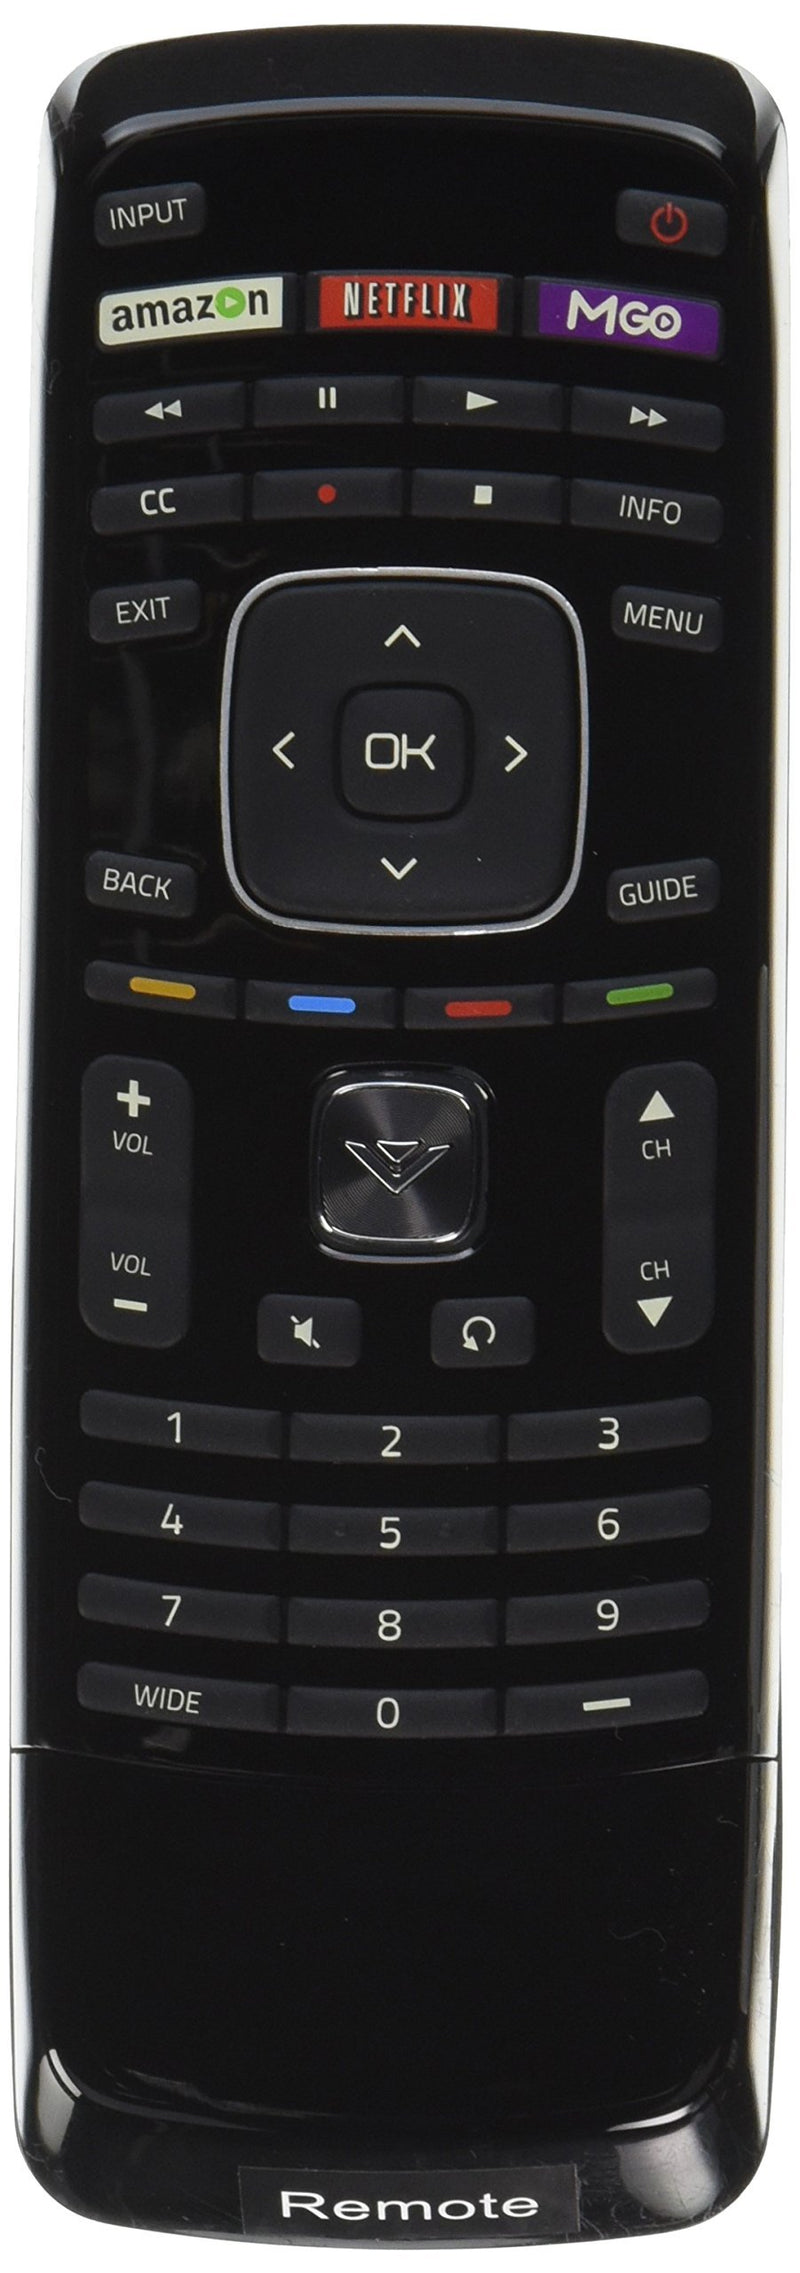 VIZIO Xrt302 QWERTY Keyboard Remote for M650vse M550vse M470vse M-go Tv Internet Tv-30 Days Warranty!